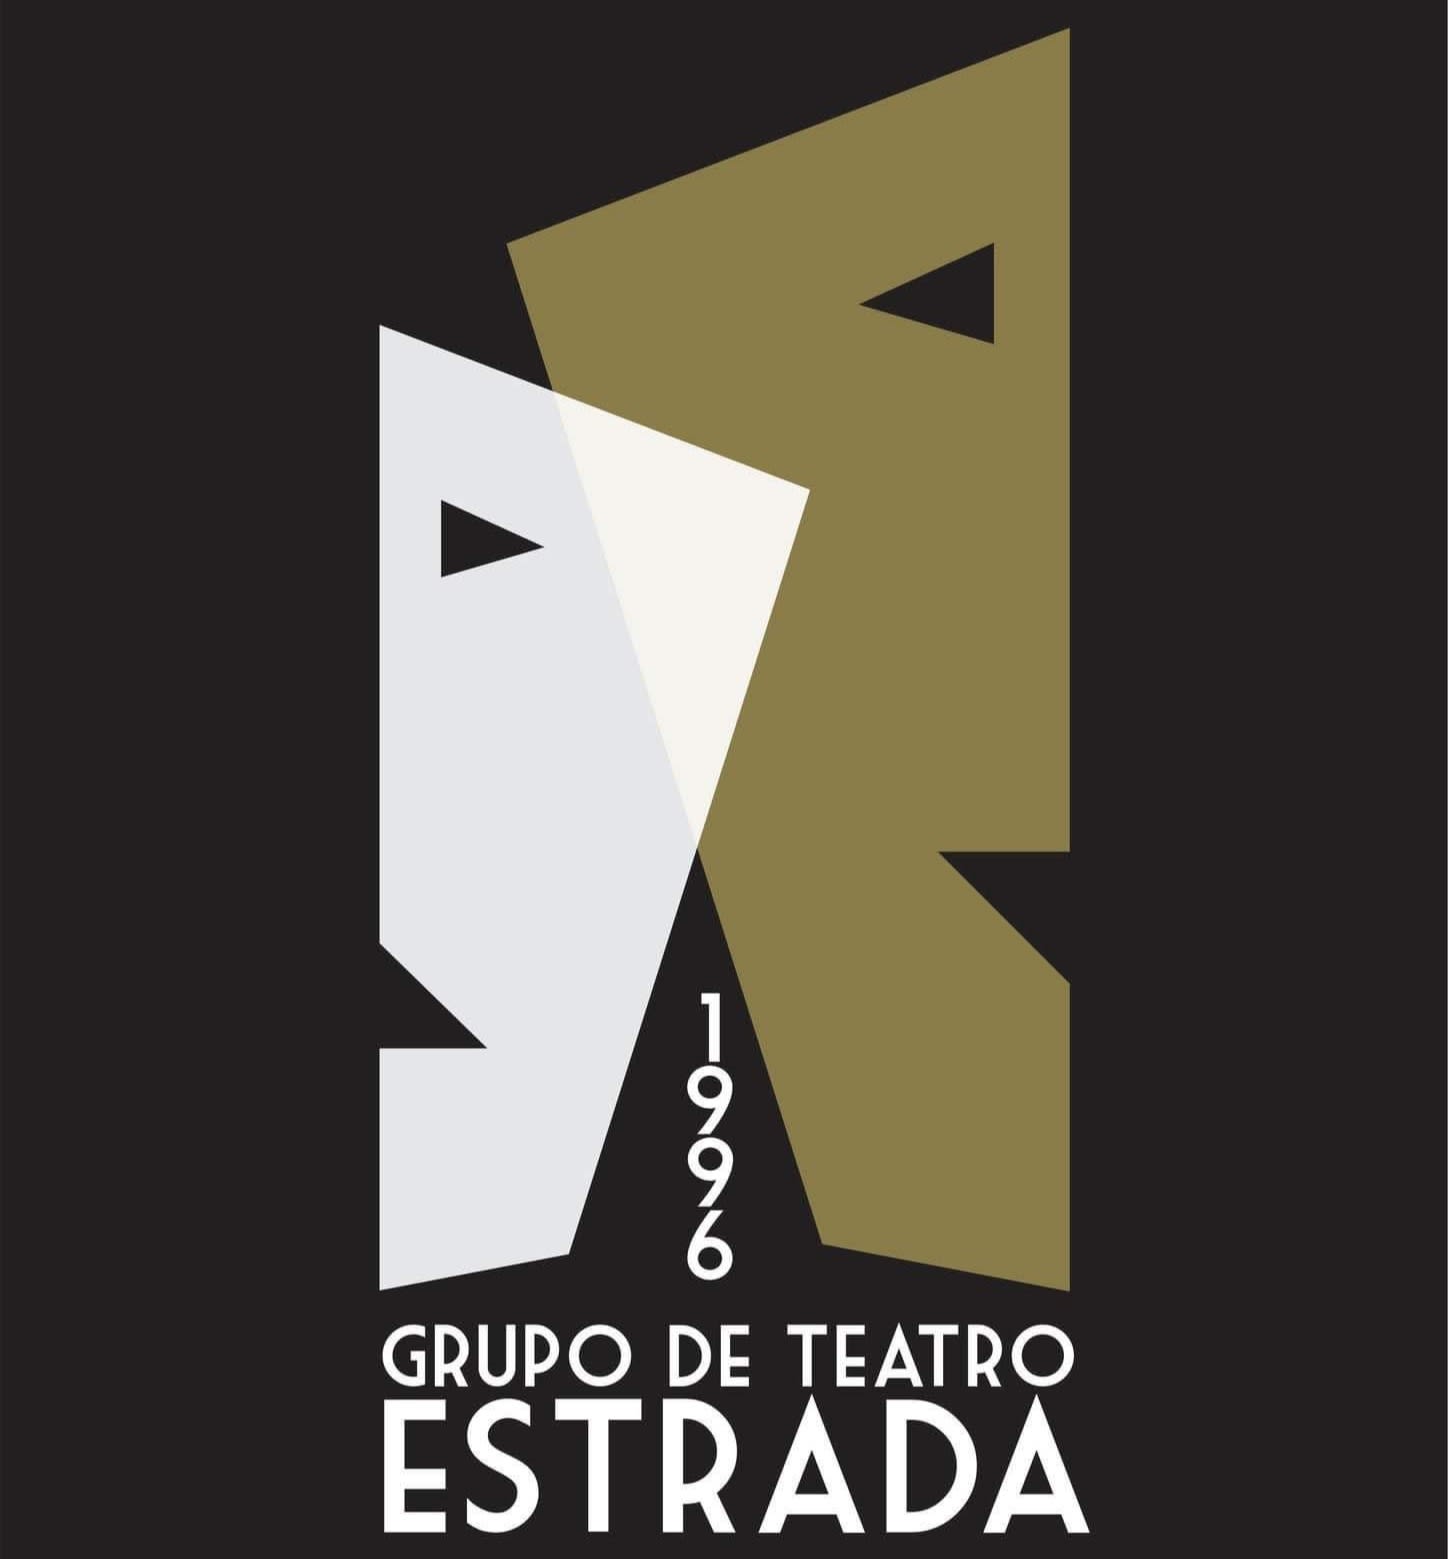 Grupo de Teatro Estrada - Teatro Estrada